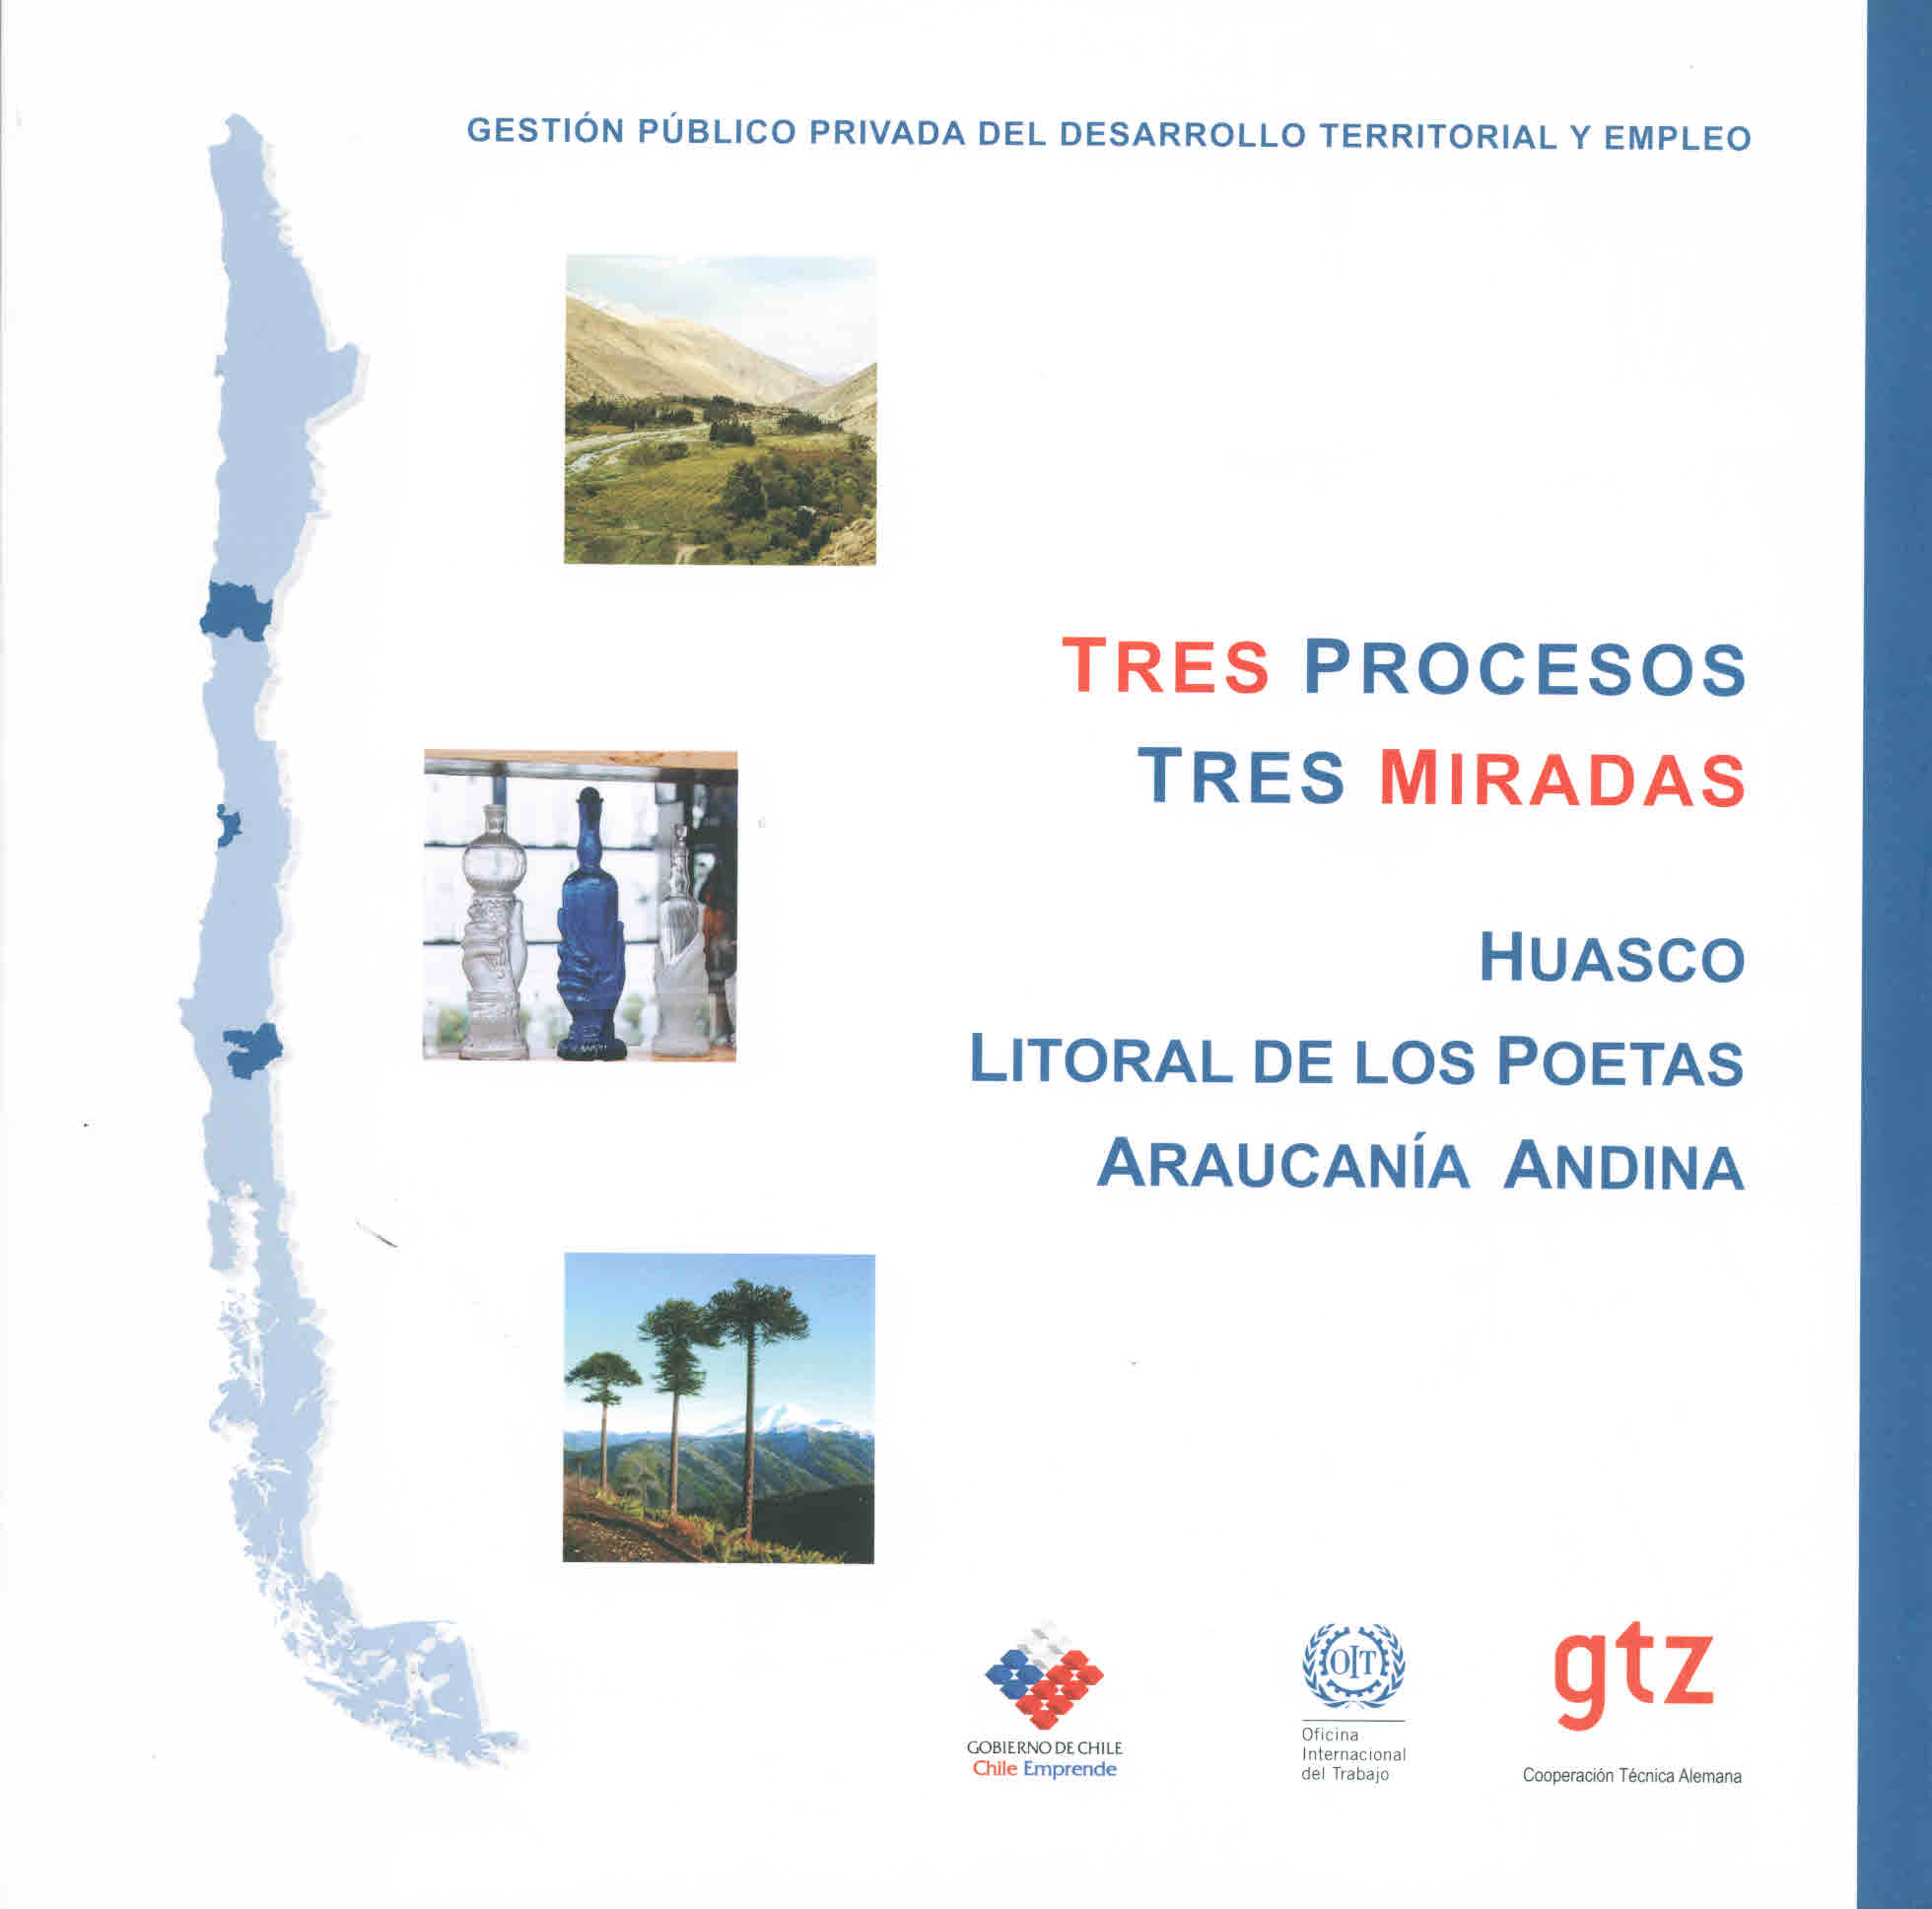 Tres procesos tres miradas Huasco, Litoral de los poetas, Araucanía Andina